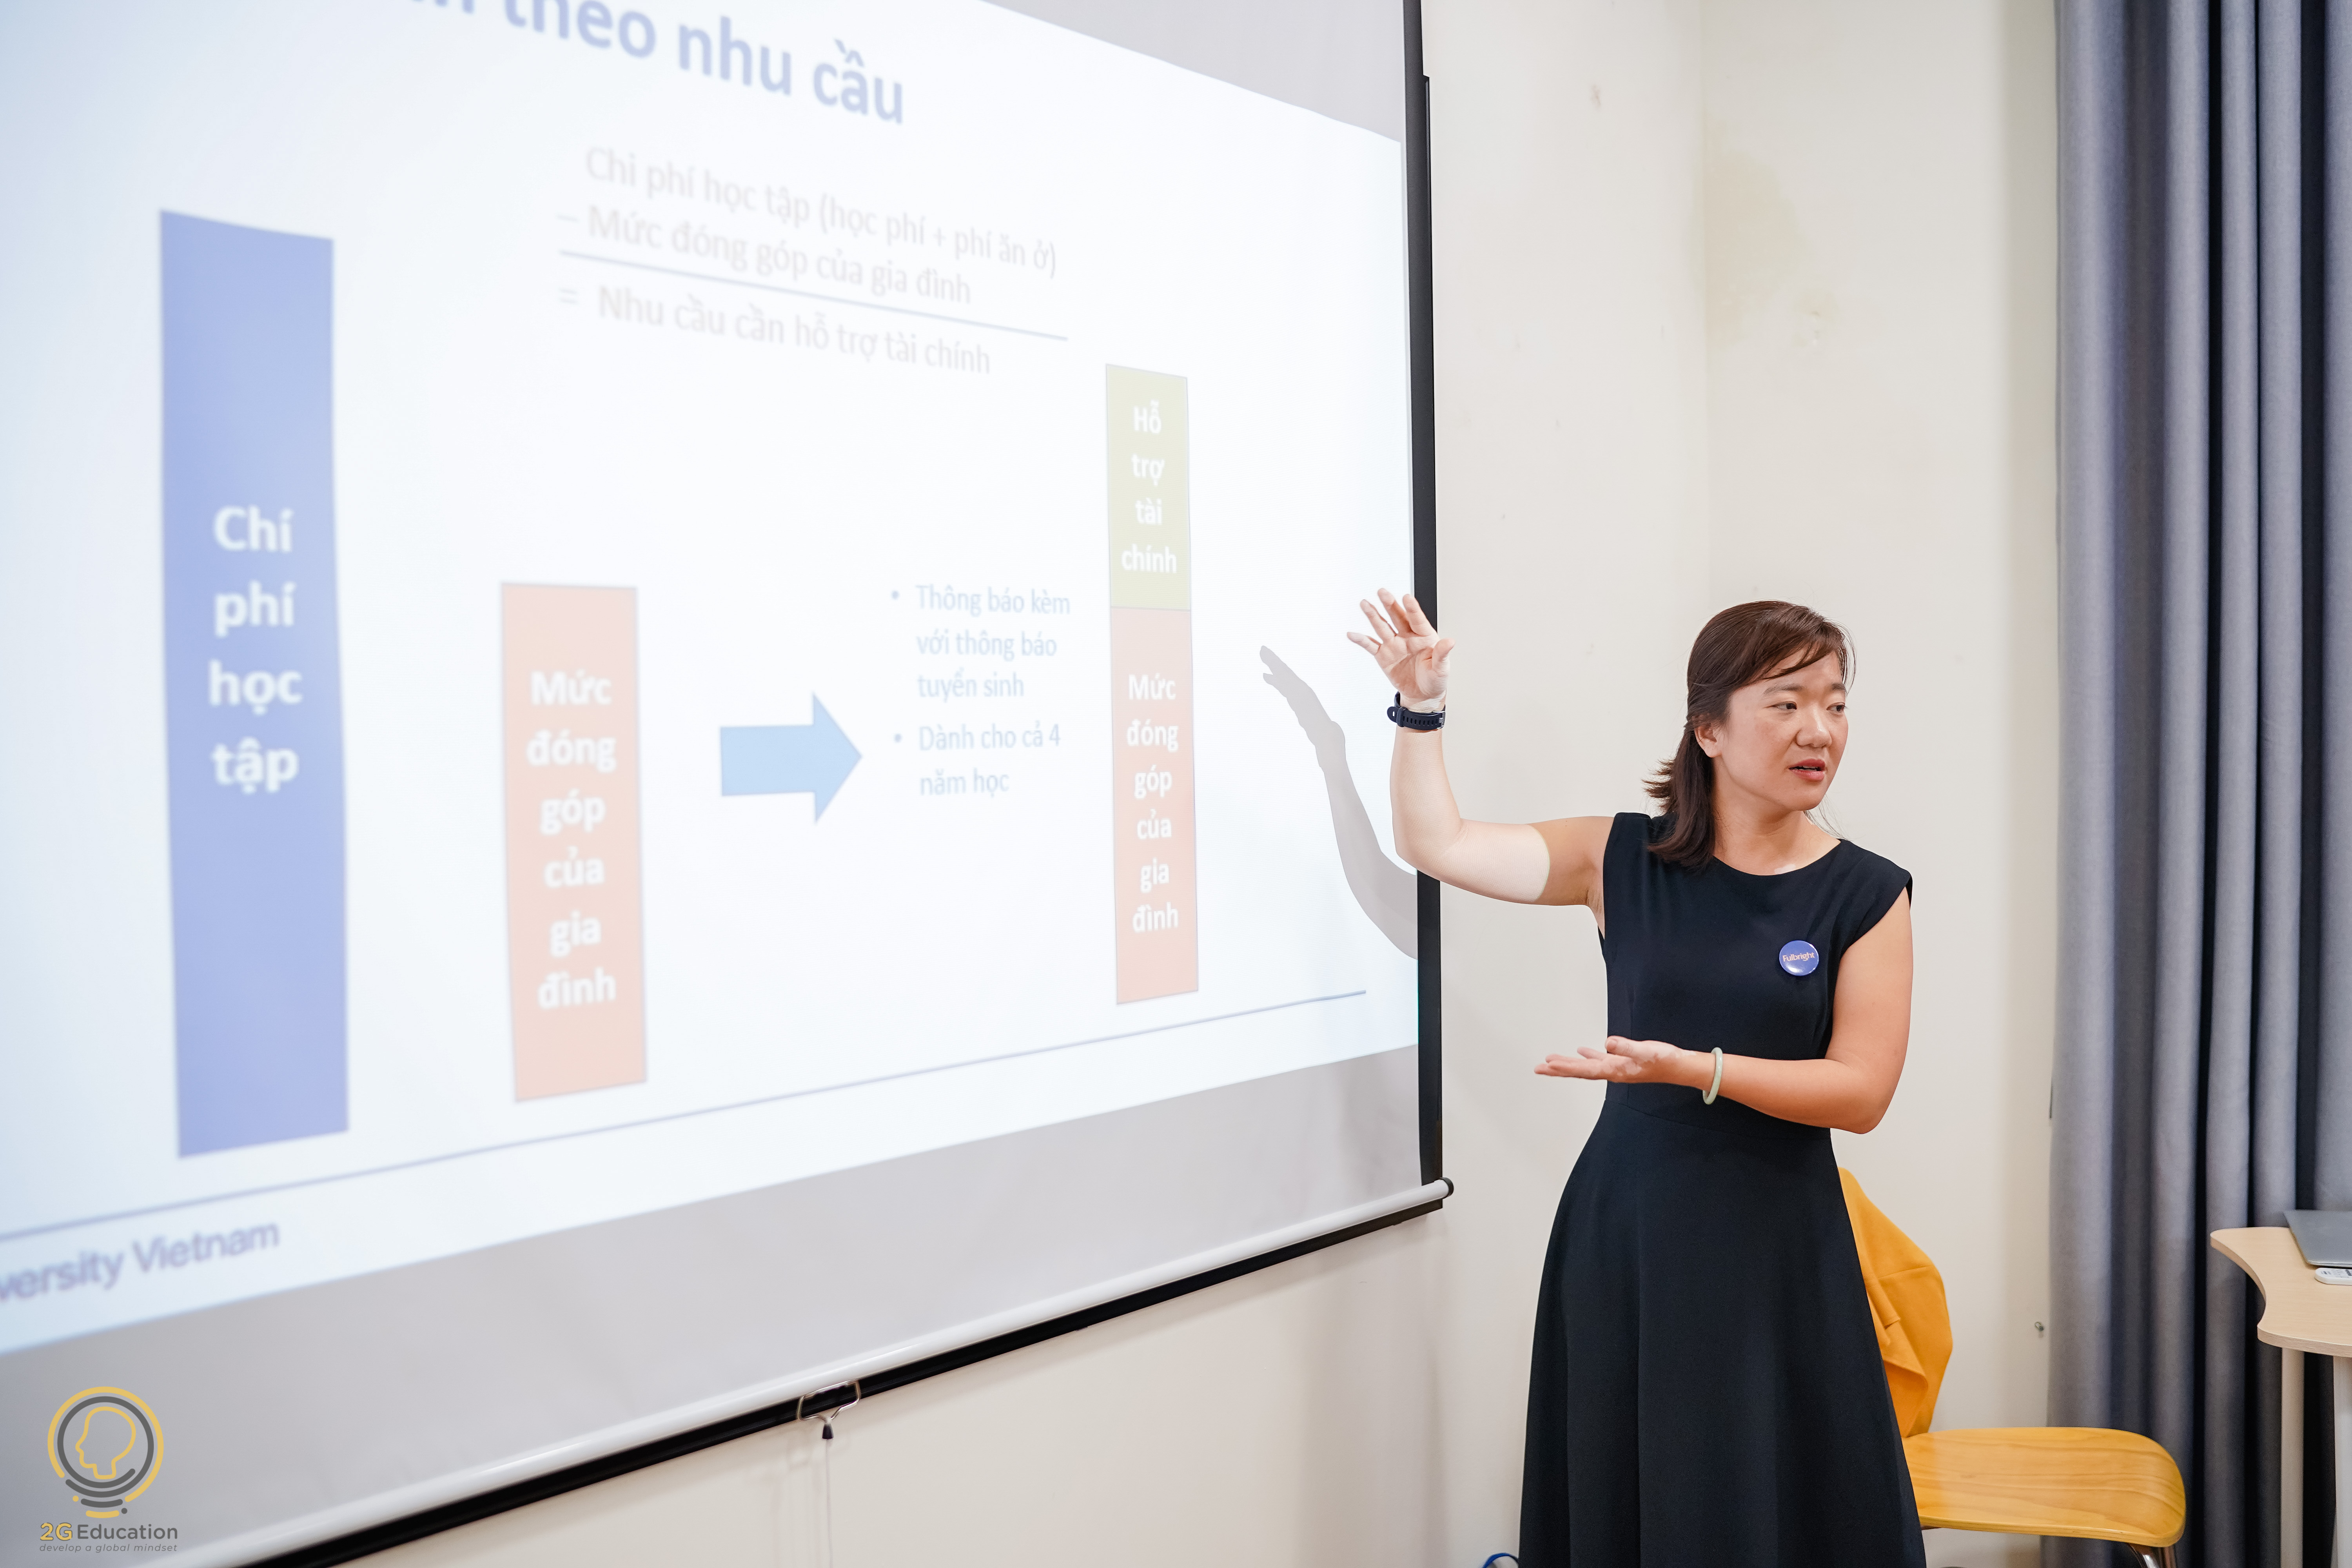 Bà Lê Thị Quỳnh Trâm, Thạc sĩ Quản trị công tại ĐH Havard, hiện đang là Giám đốc tuyển sinh tại FUV